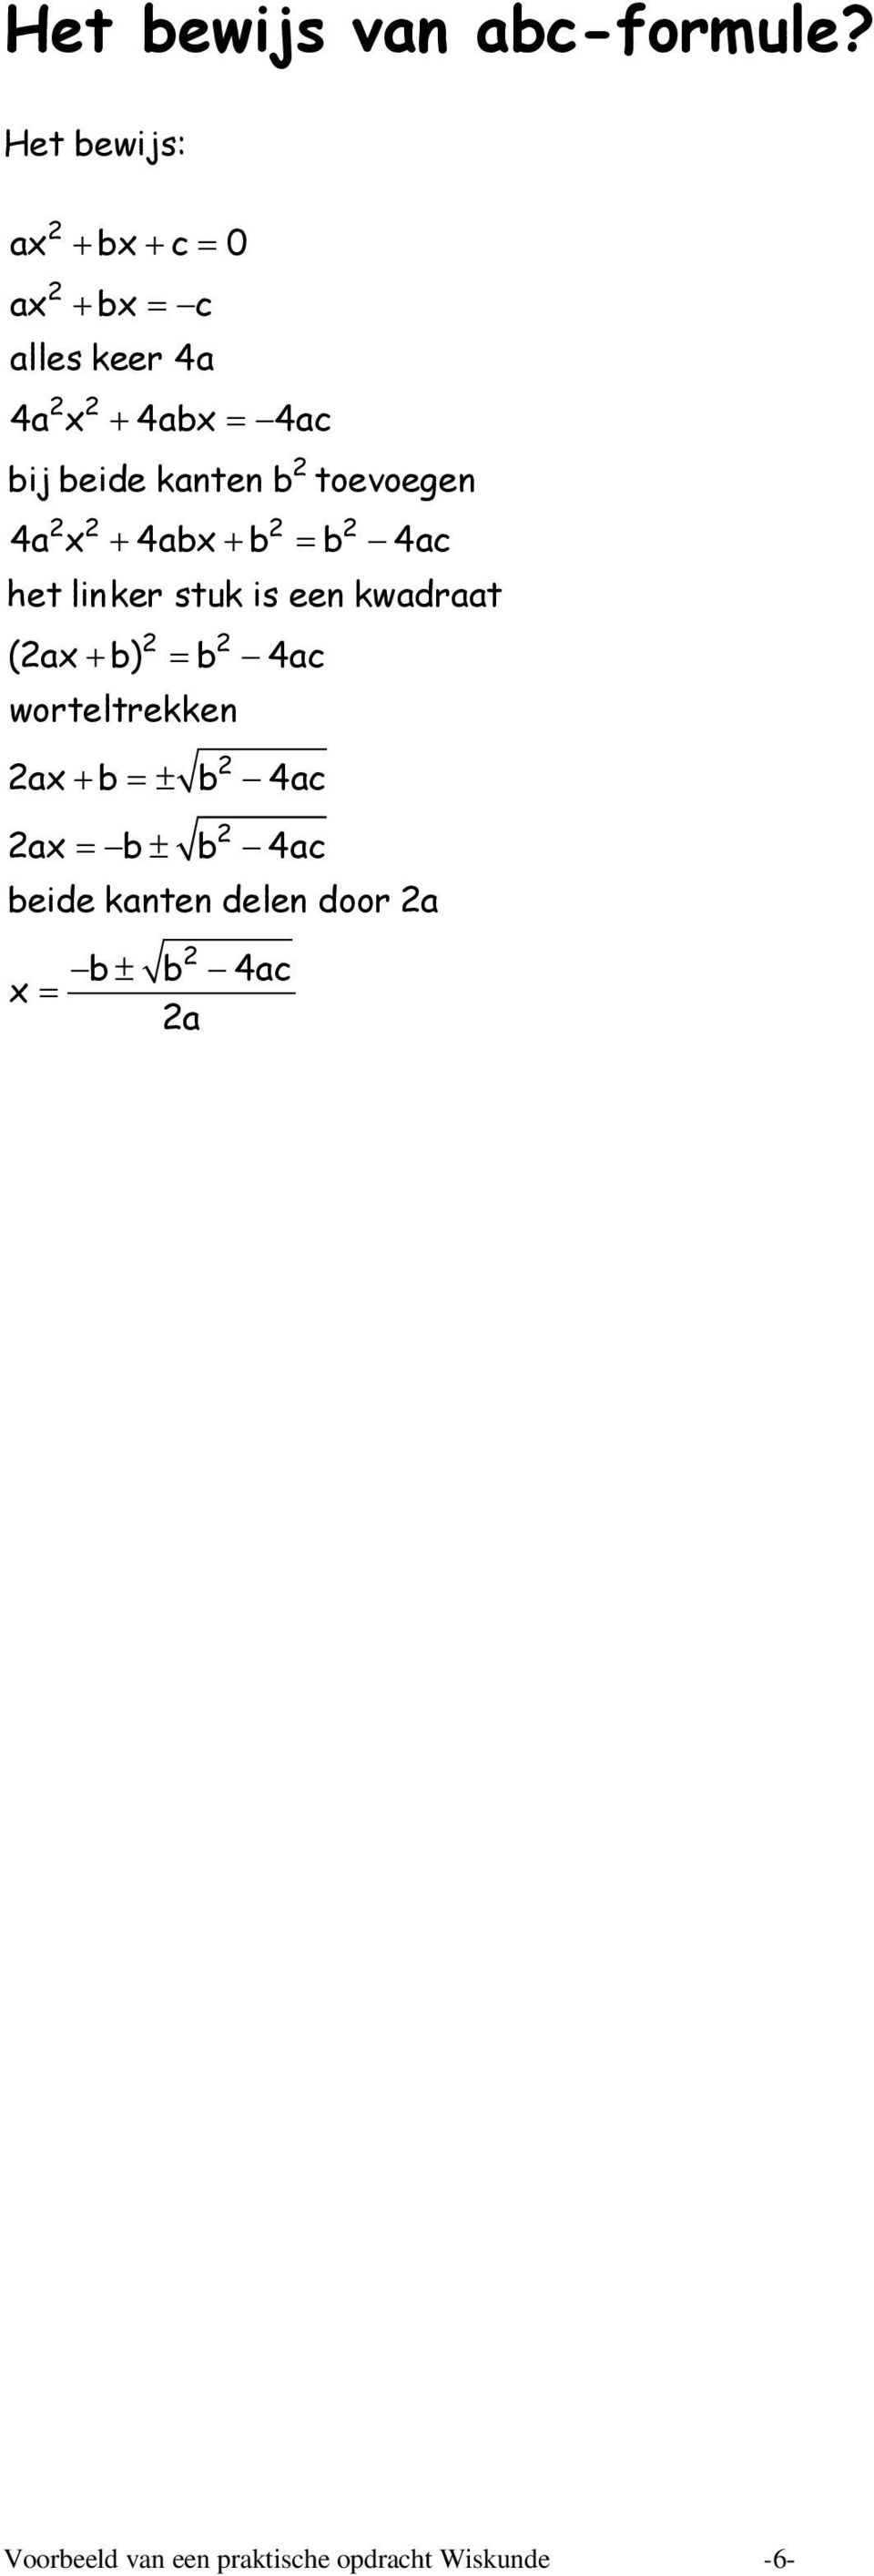 kanten b toevoegen 4a x + 4abx + b = b 4ac het linker stuk is een kwadraat (ax + b)